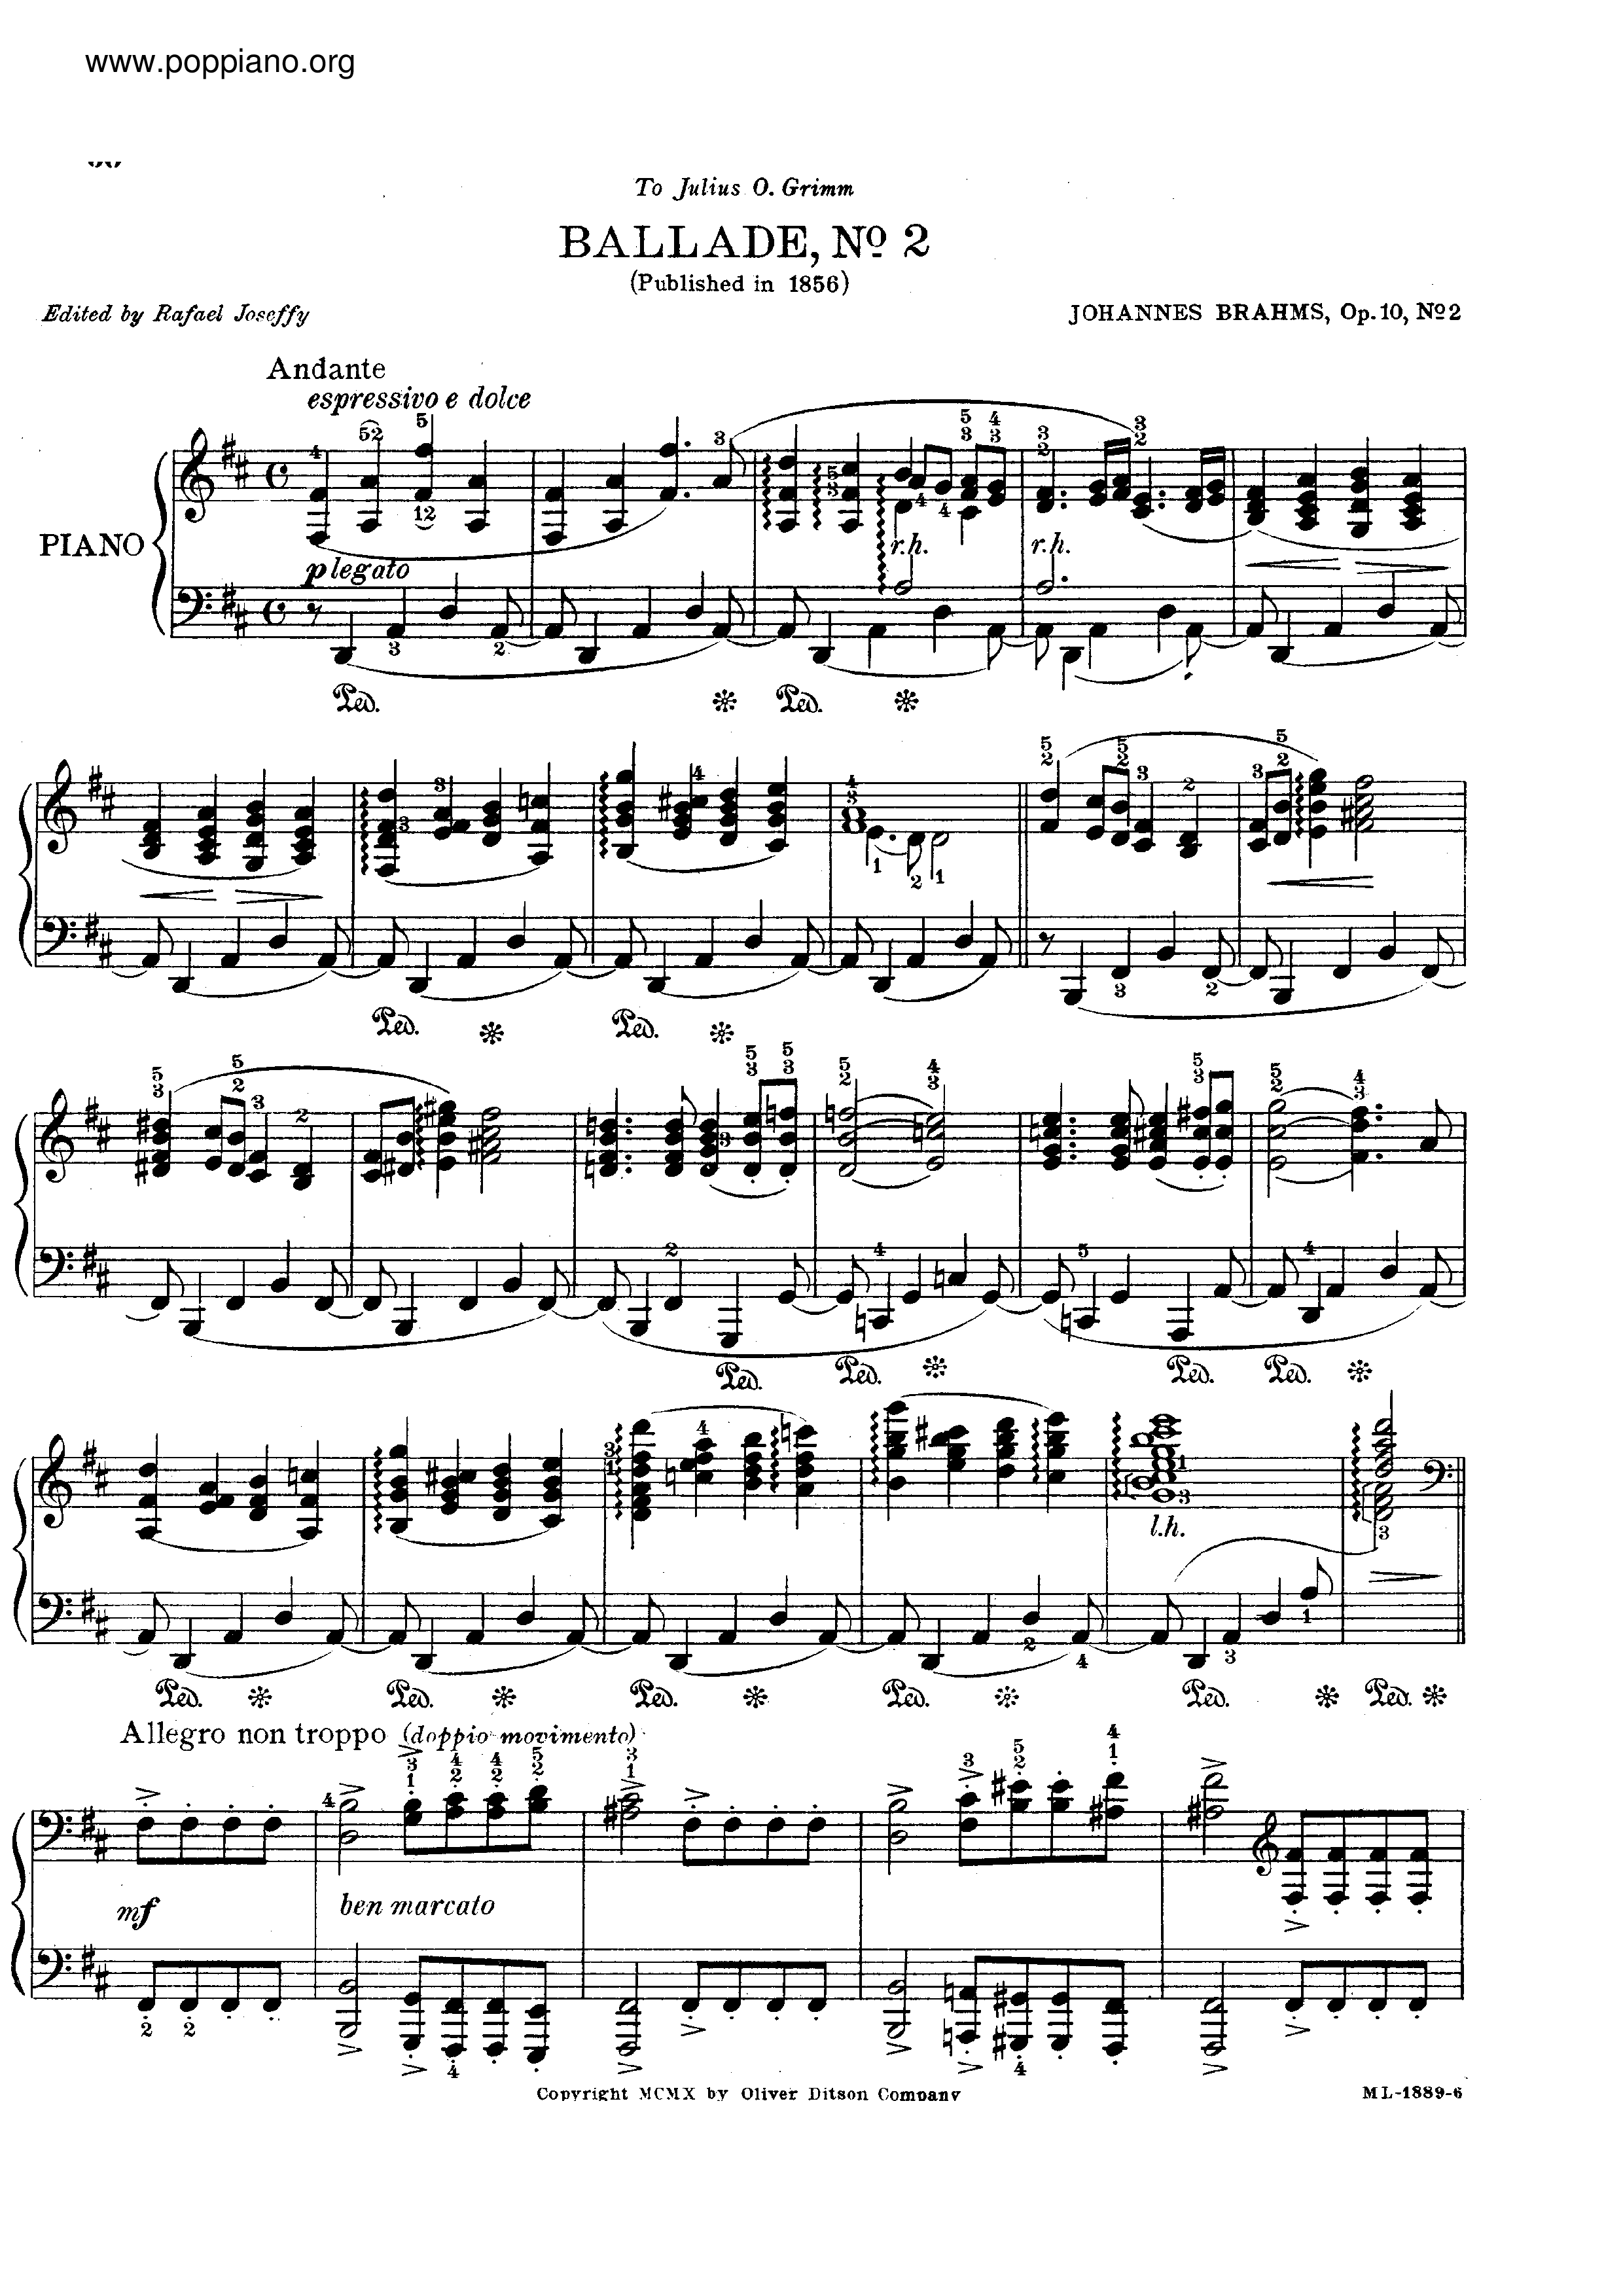 No. 2 in D major. Andante琴谱